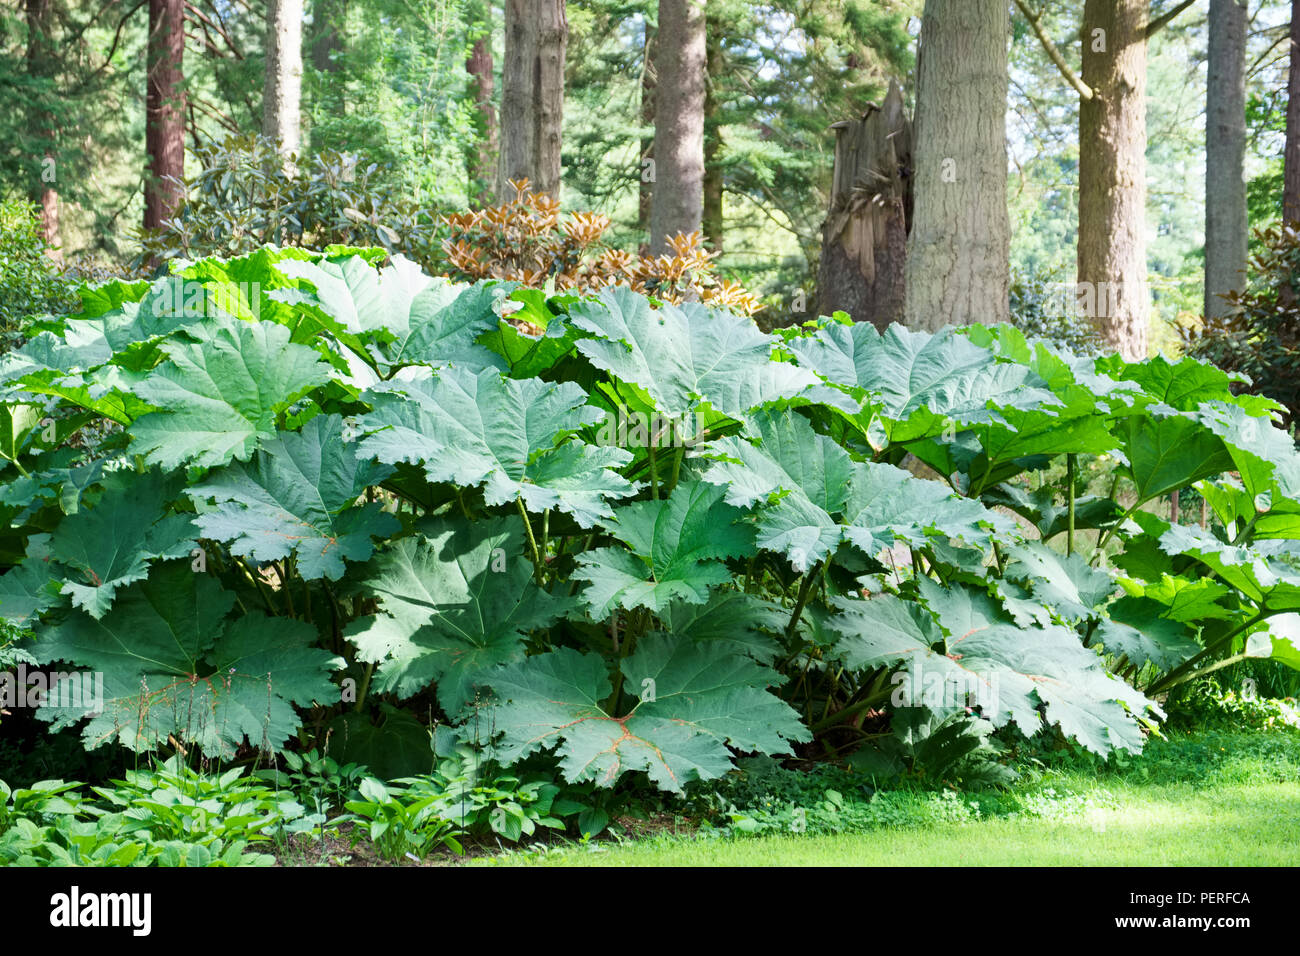 Riesige Rhabarber grosse Anlage mit riesigen grünen Blätter wachsen im wilden Wald in Europa Stockfoto